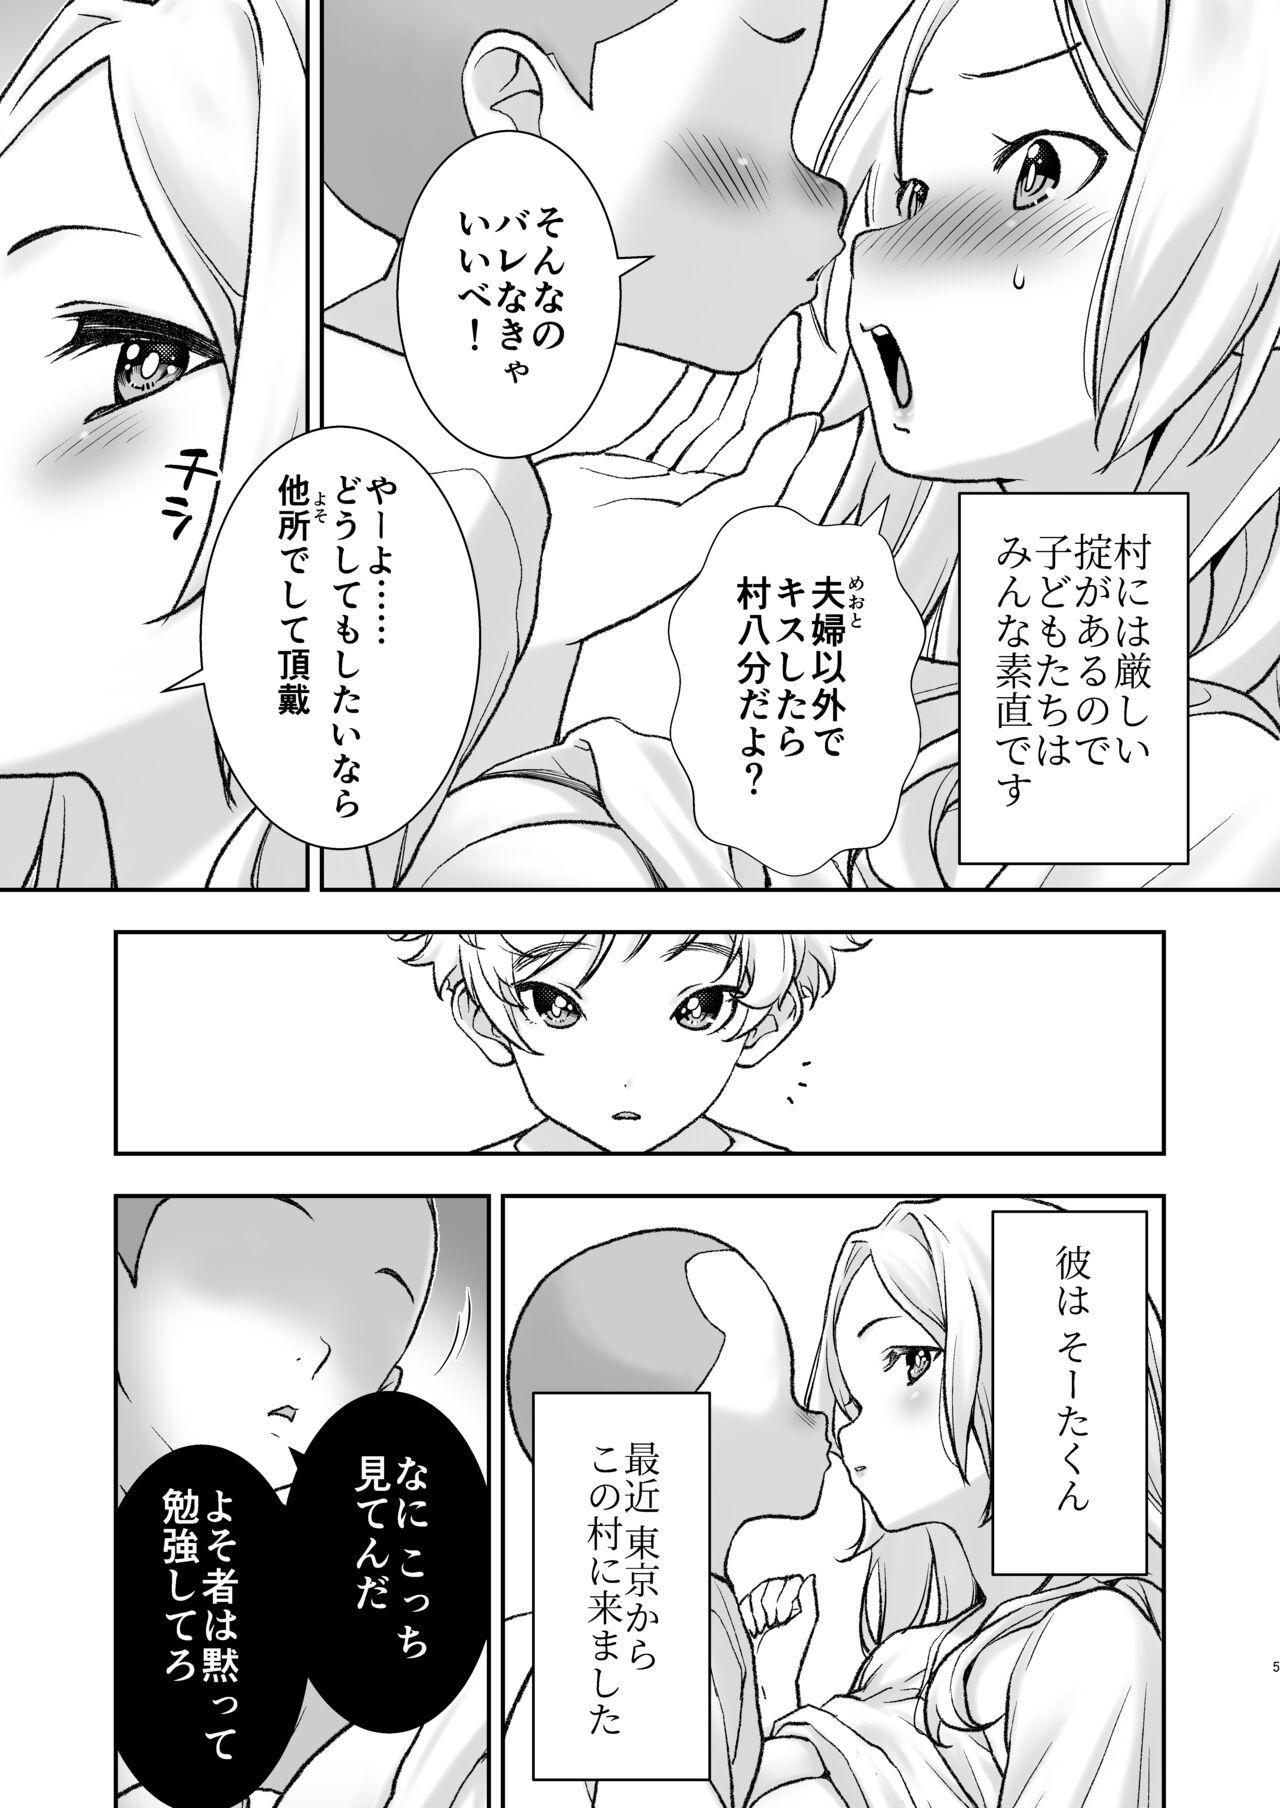 Ball Licking Mura ni wa Juku ga Nai no de Watashi ga Benkyou wo Oshiete-imasu. - Original Webcamchat - Page 5